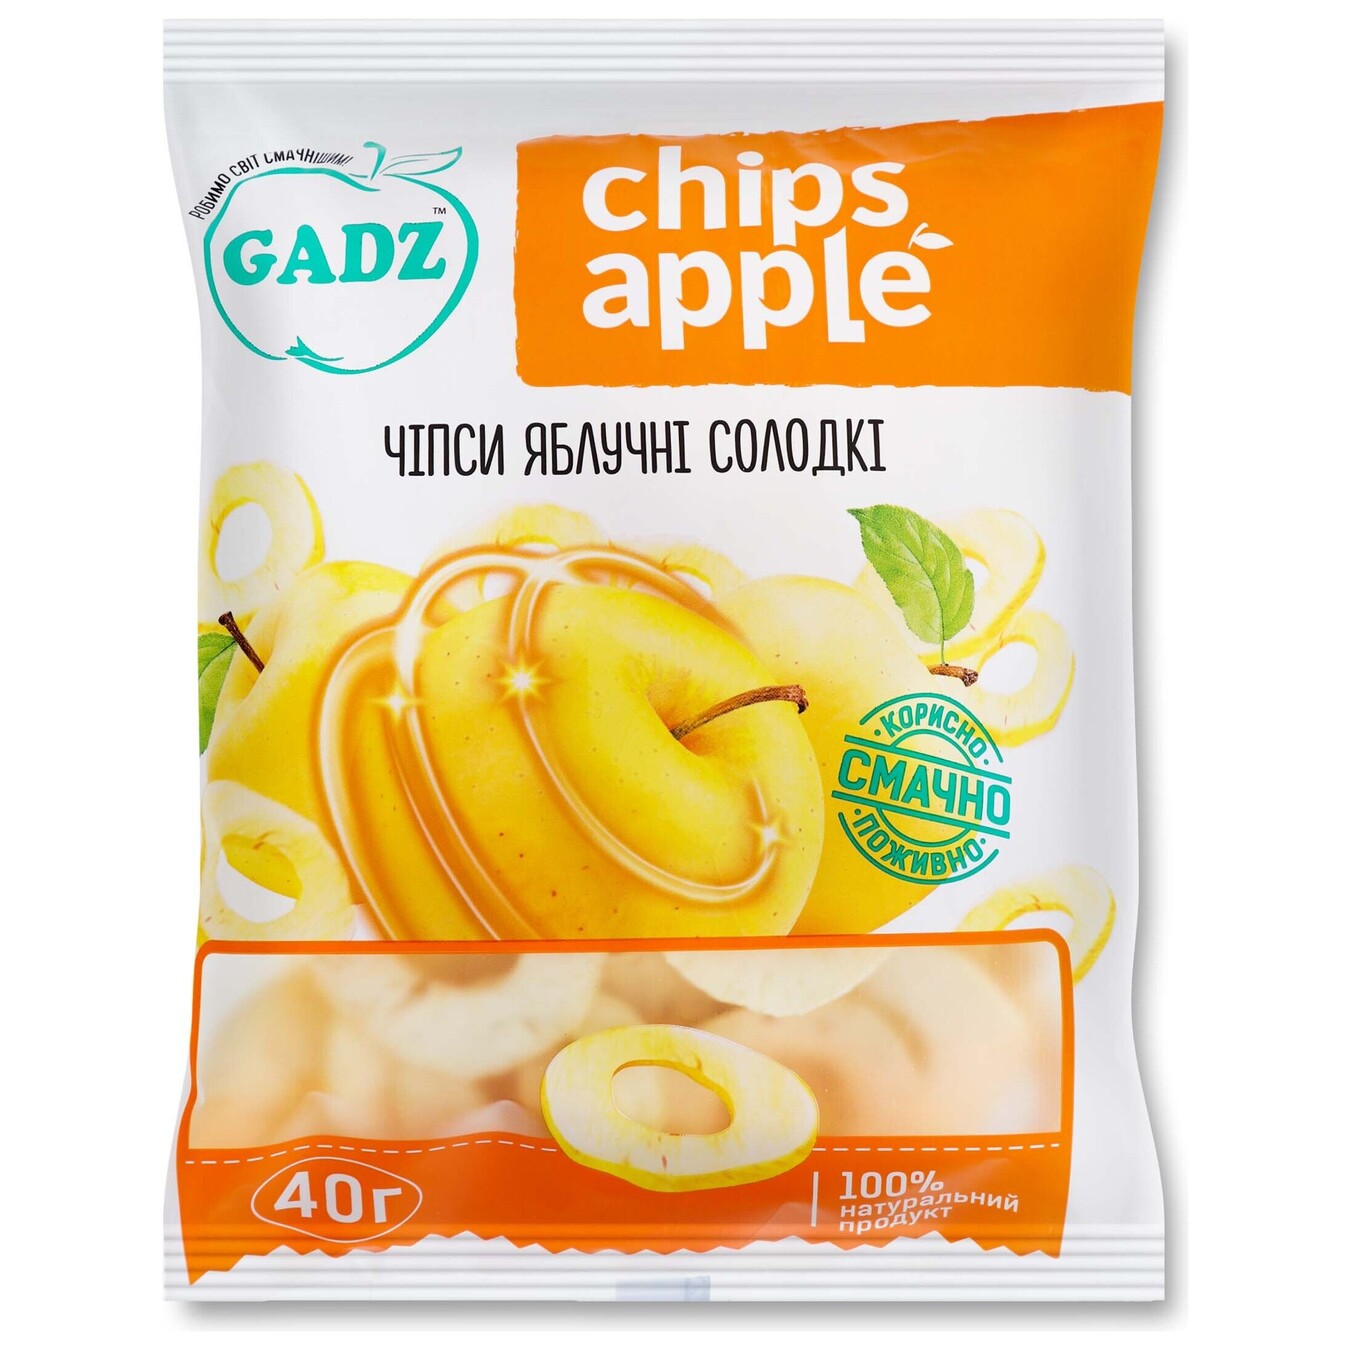 Чіпси GADZ яблучні солодкі 40г